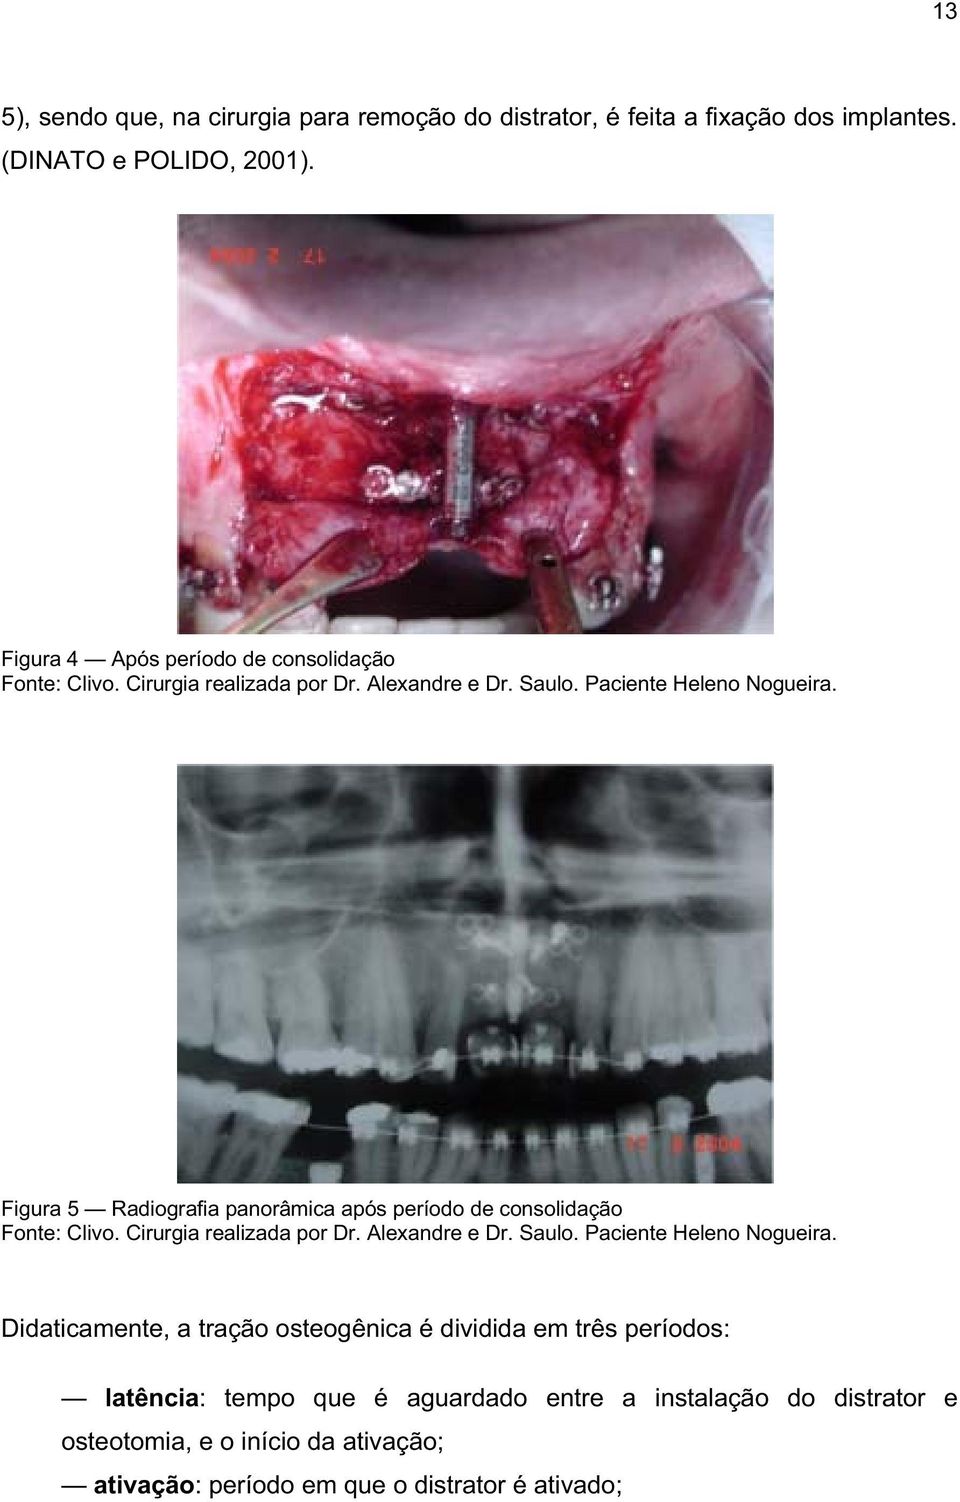 Figura 5 Radiografia panorâmica após período de consolidação Fonte: Clivo. Cirurgia realizada por Dr. Alexandre e Dr. Saulo. Paciente Heleno Nogueira.